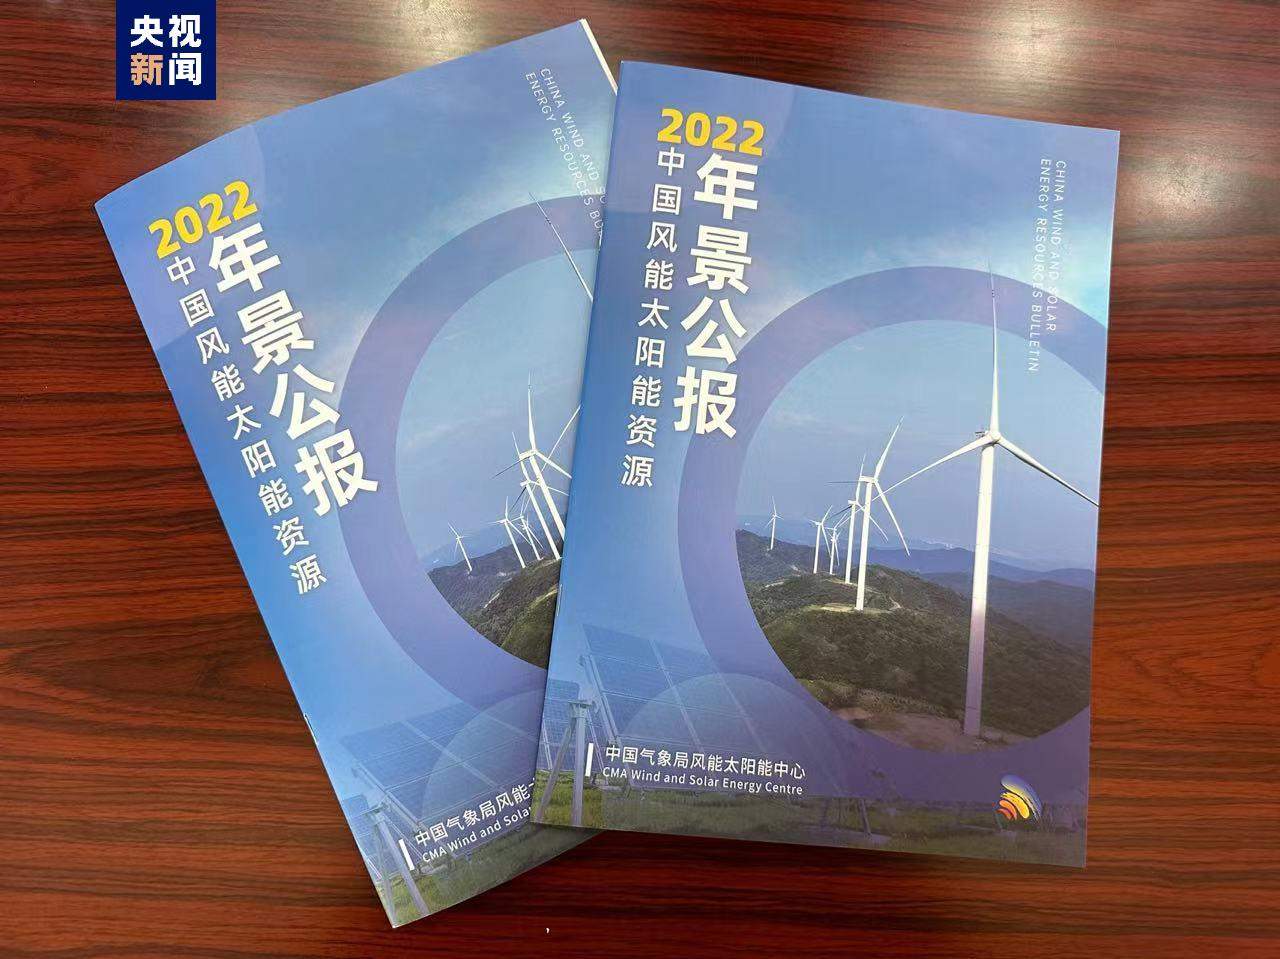 《2022年中国风能太阳能资源年景公报》发布